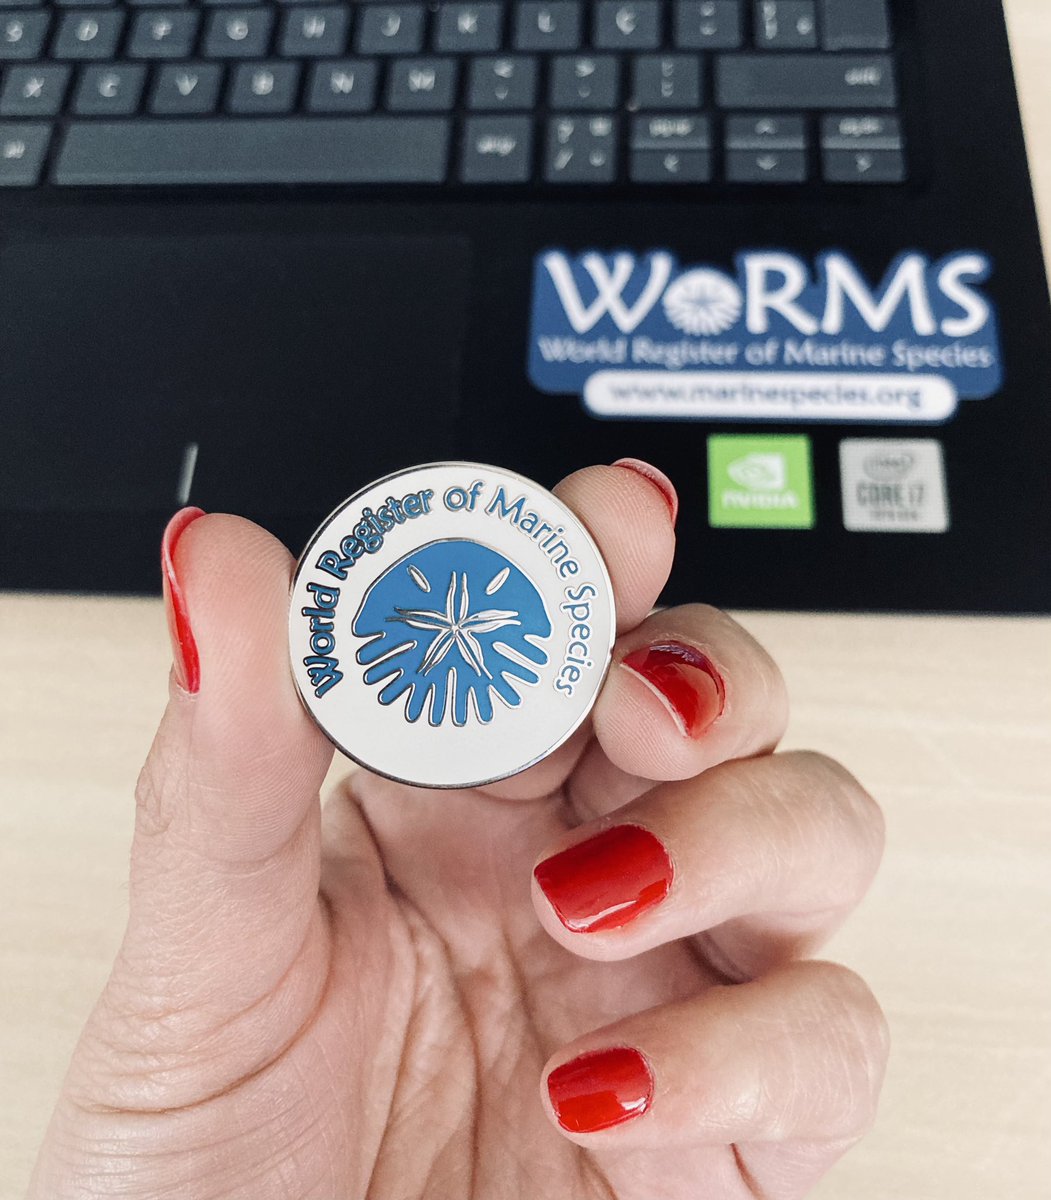 Workshop @WRMarineSpecies in Recife 🇧🇷

#marinespecies #WoRMS